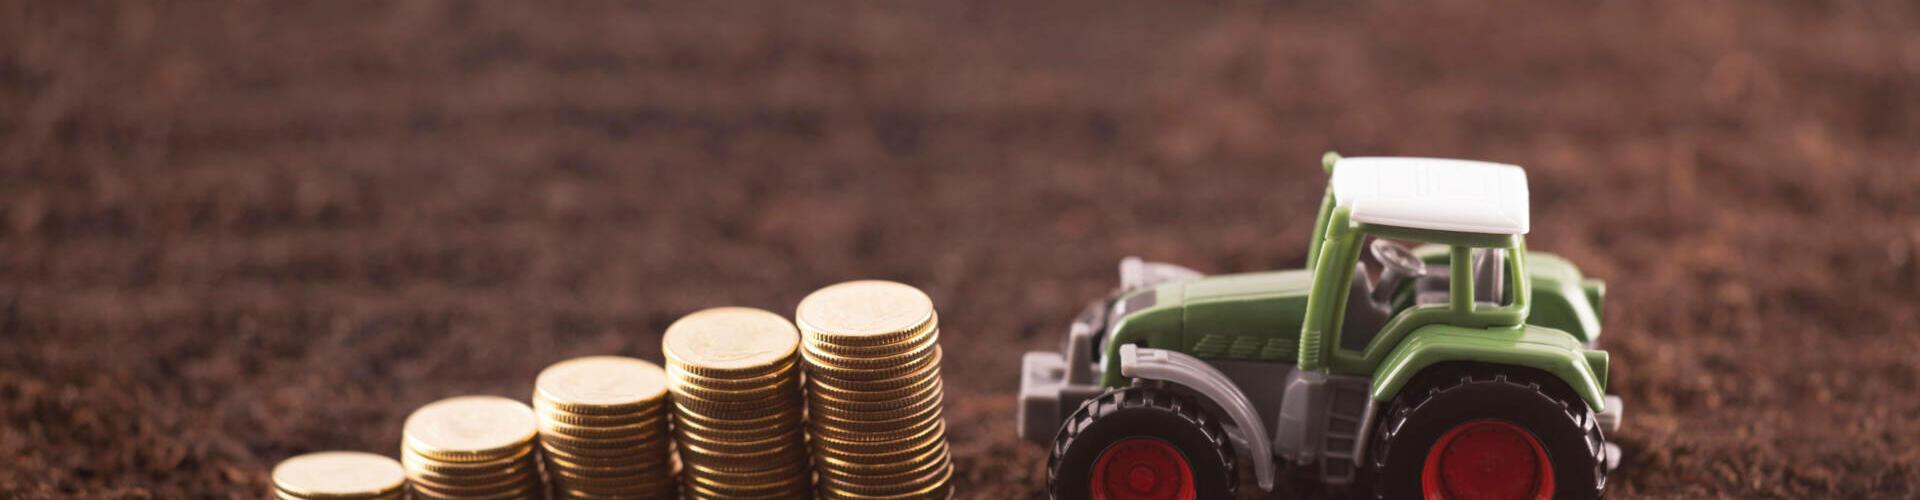 Umfrage: Wer verdient in der Agrarbranche das höchste Einstiegsgehalt?